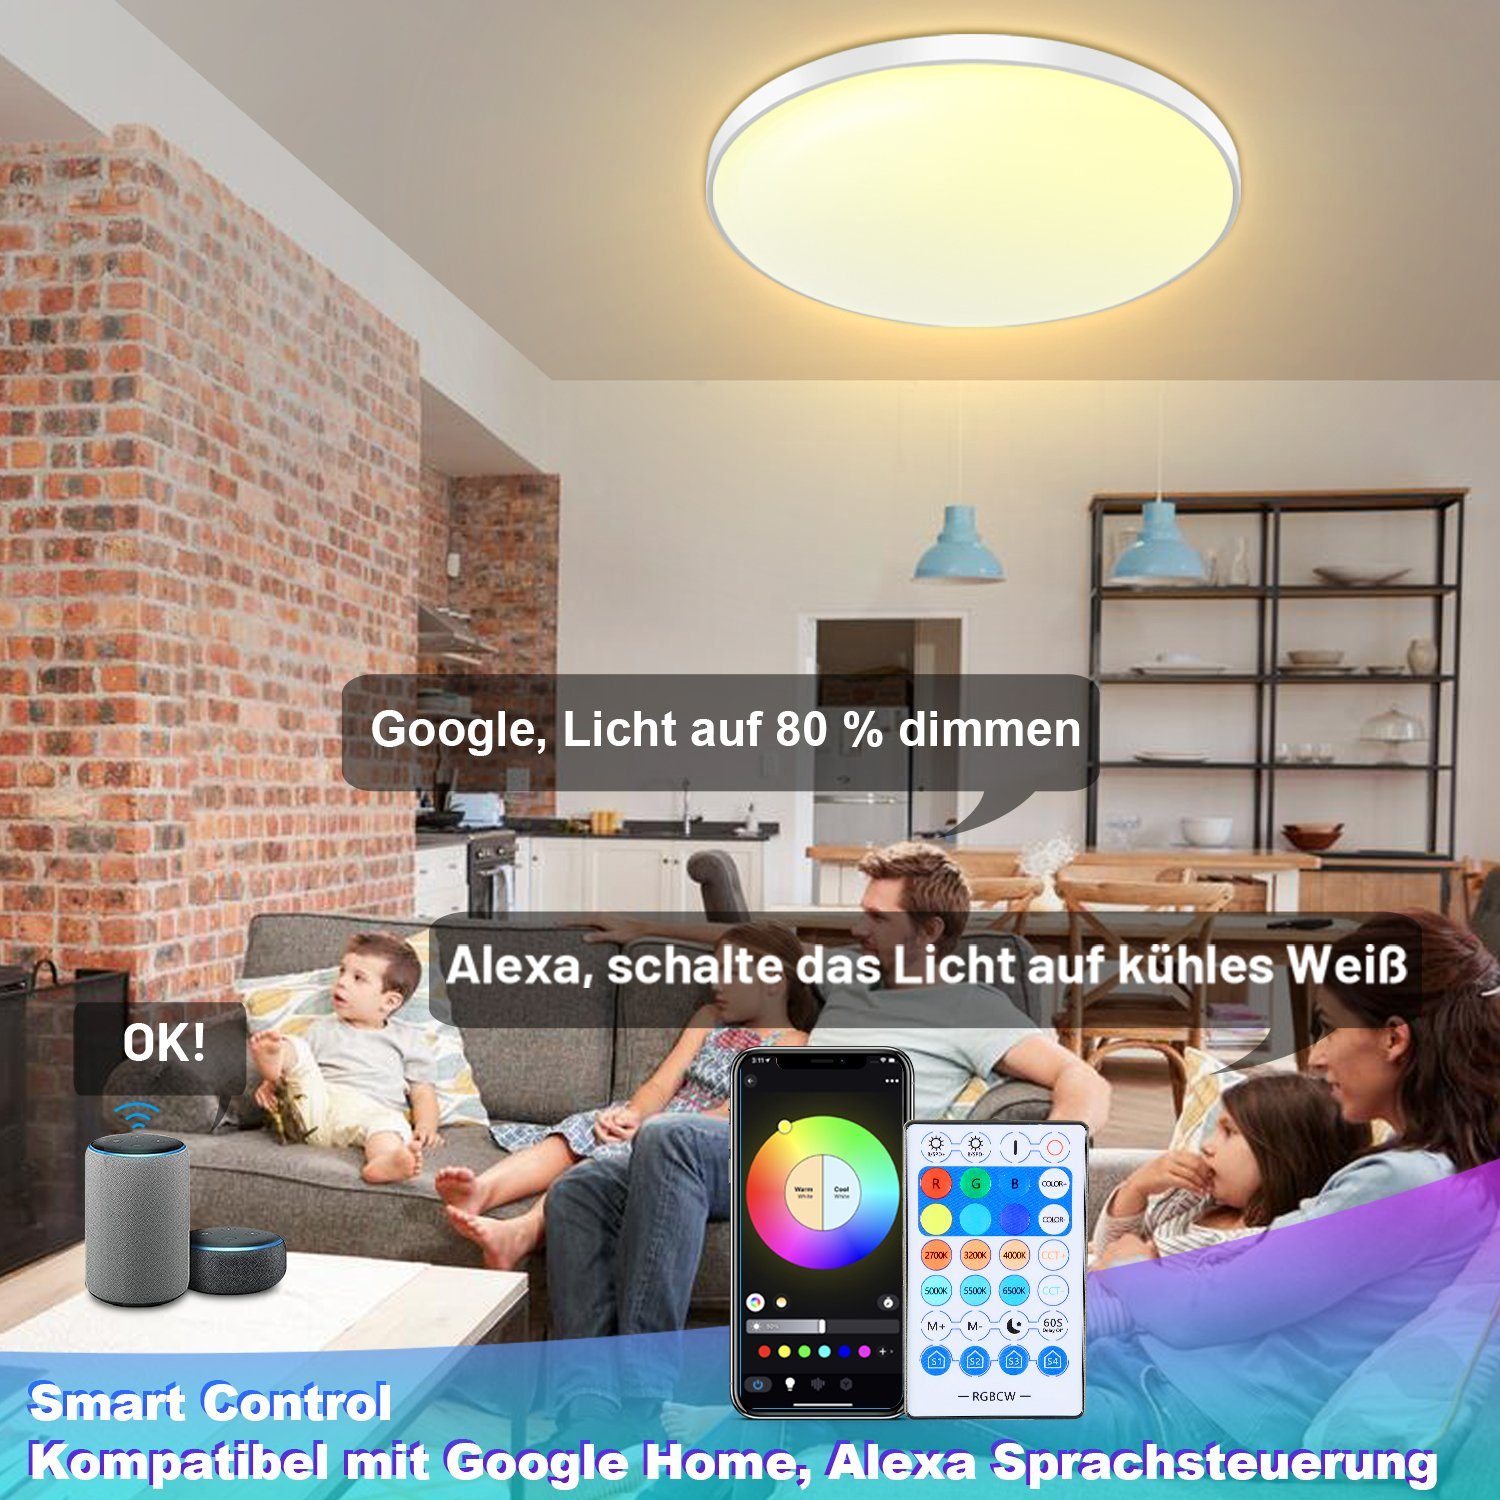 Gimisgu LED mit Deckenlampe Deckenleuchte Deckenleuchte Zeitplan Fernbedienung 30W LED RGB